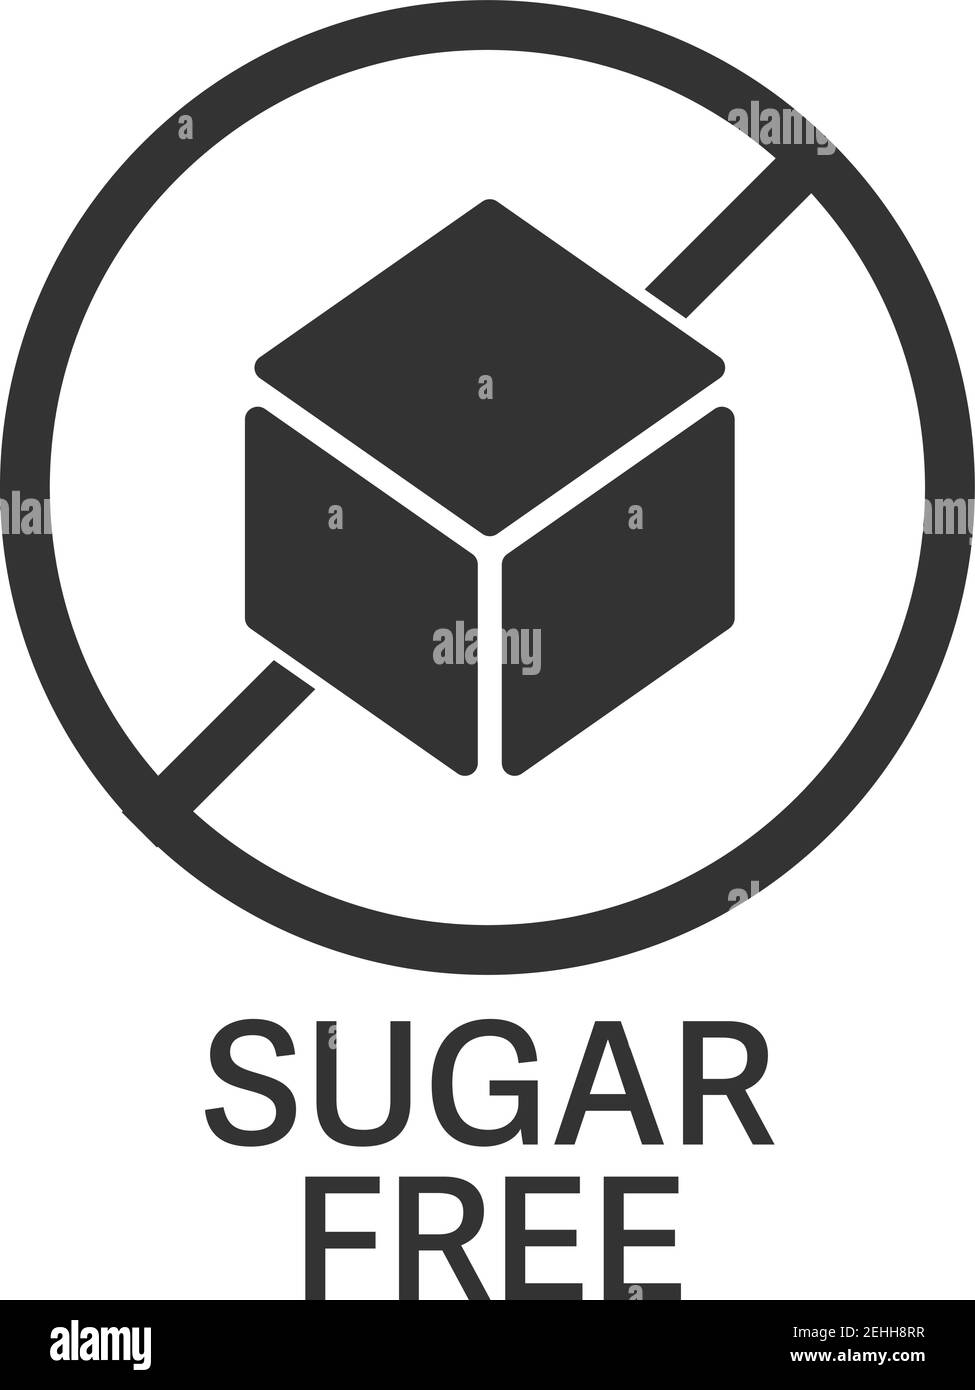 simbolo o etichetta senza zucchero con illustrazione vettoriale del cubo di zucchero Illustrazione Vettoriale